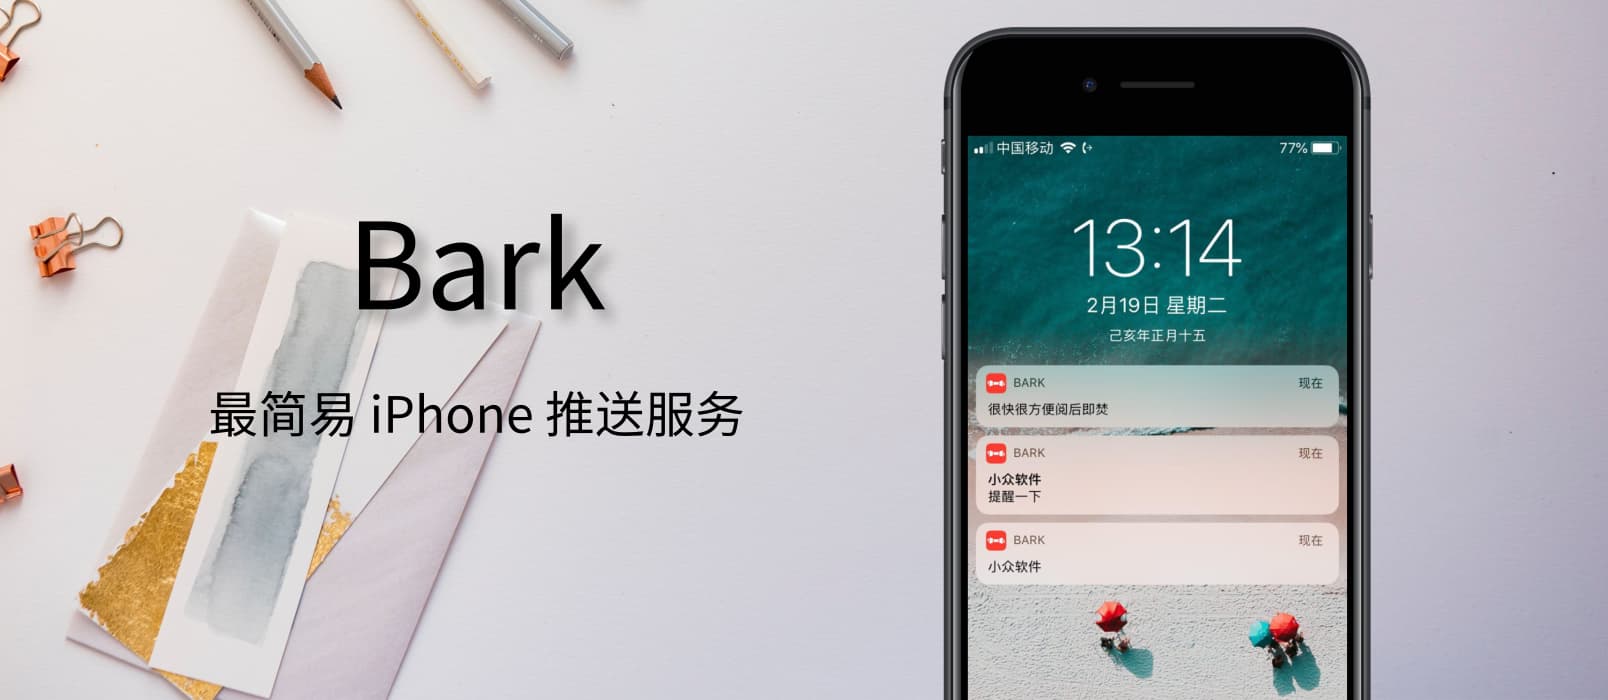 Bark - 自己给自己的 iPhone 发推送提醒 - 最简单的推送提醒服务，开源免费 1